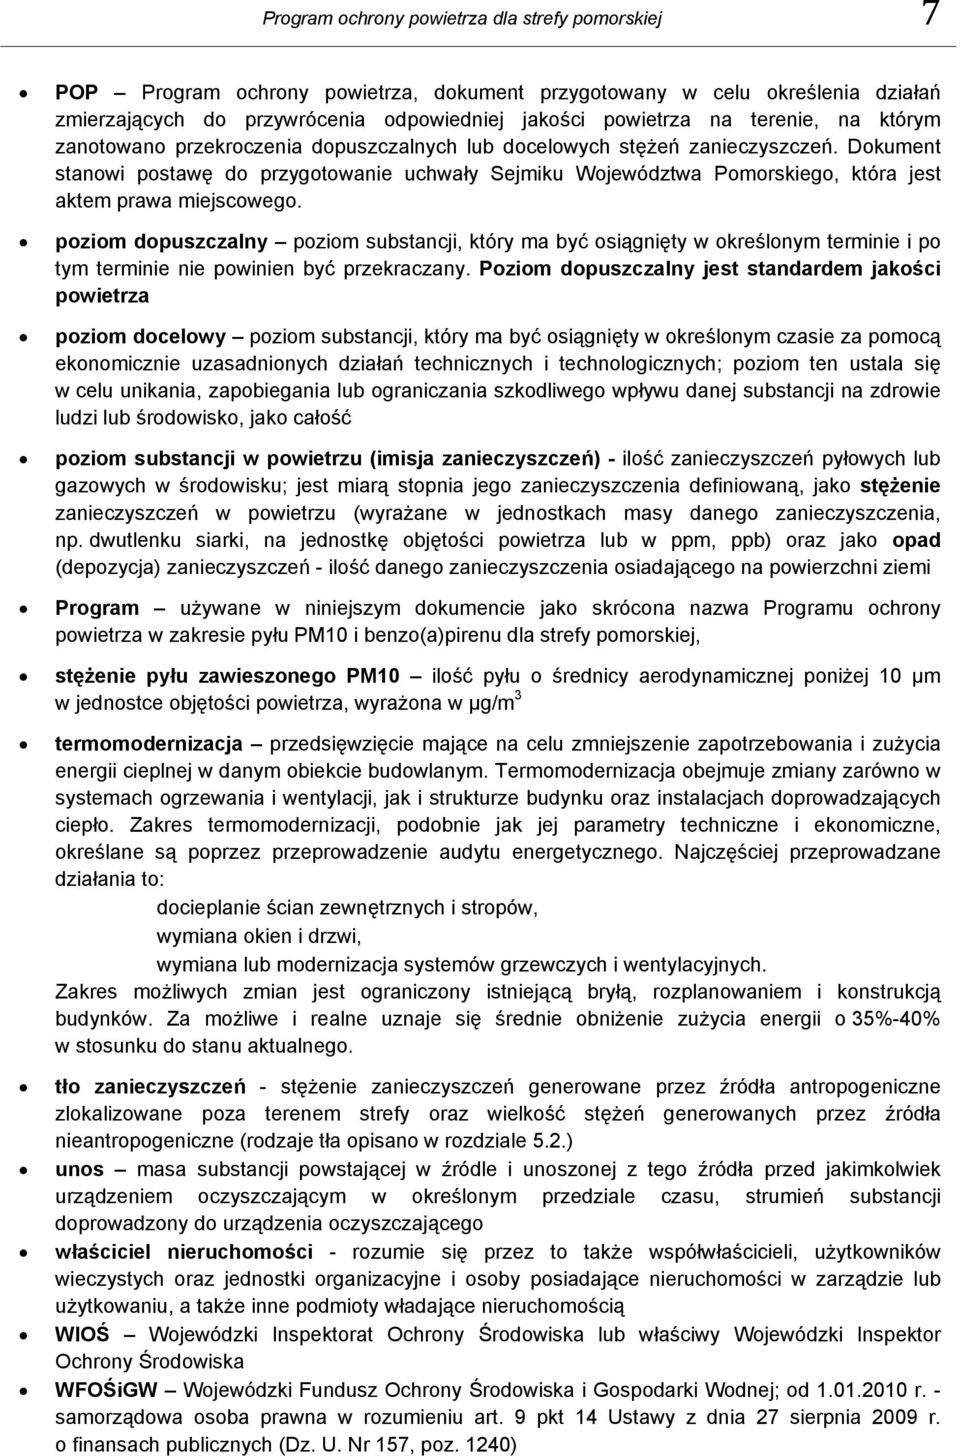 Dokument stanowi postawę do przygotowanie uchwały Sejmiku Województwa Pomorskiego, która jest aktem prawa miejscowego.